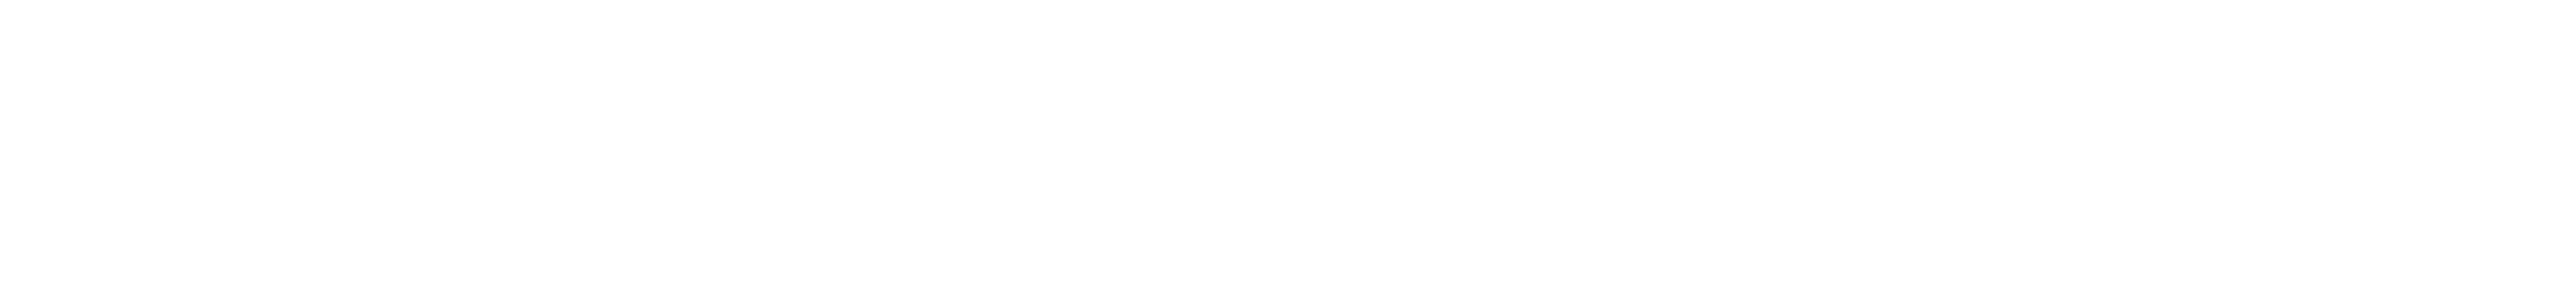 Логотип Appdynamics